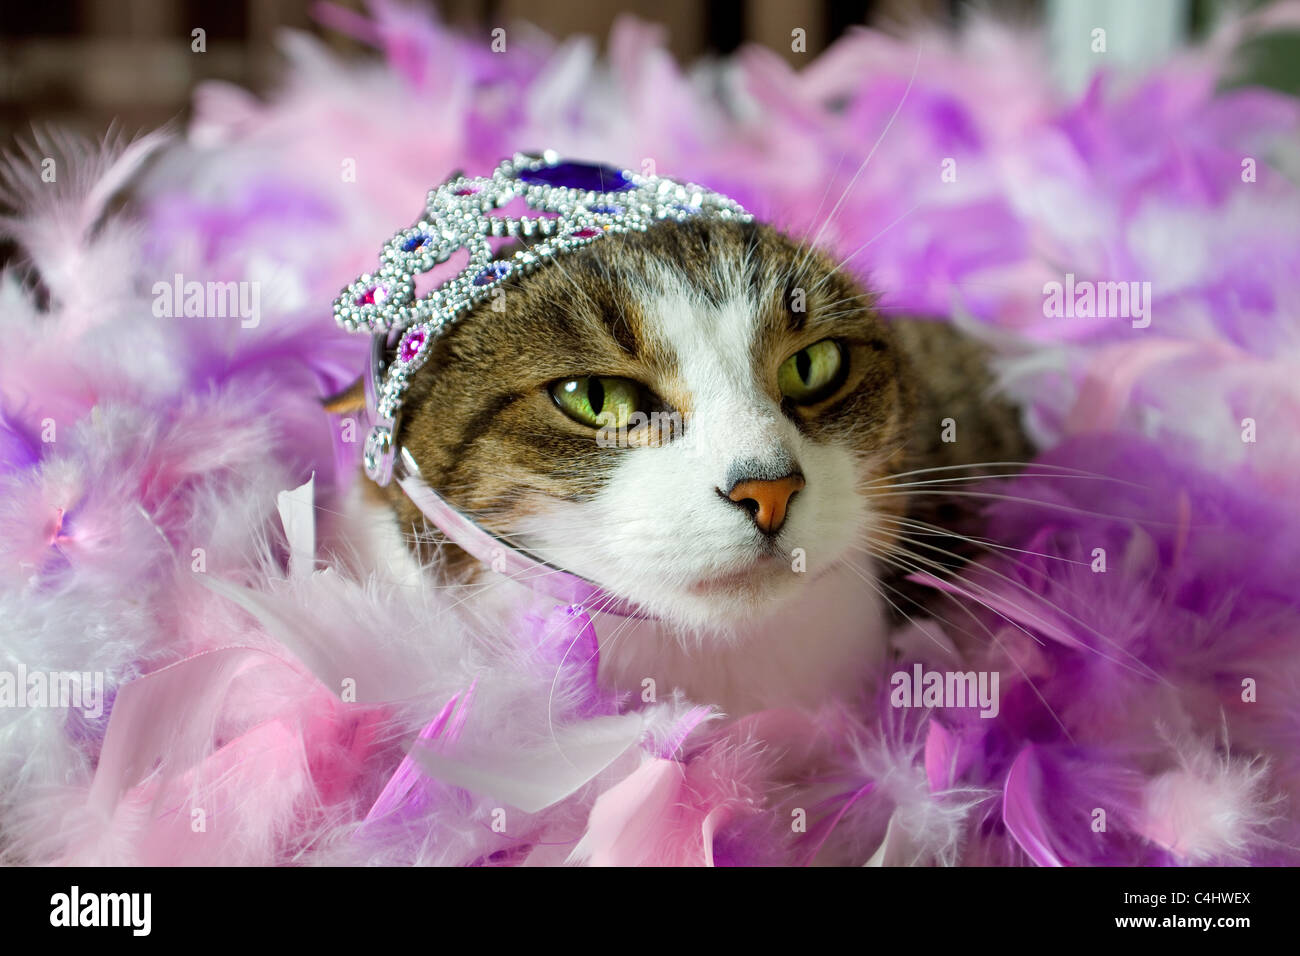 A pet cat wearing a tiara Stock Photo - Alamy